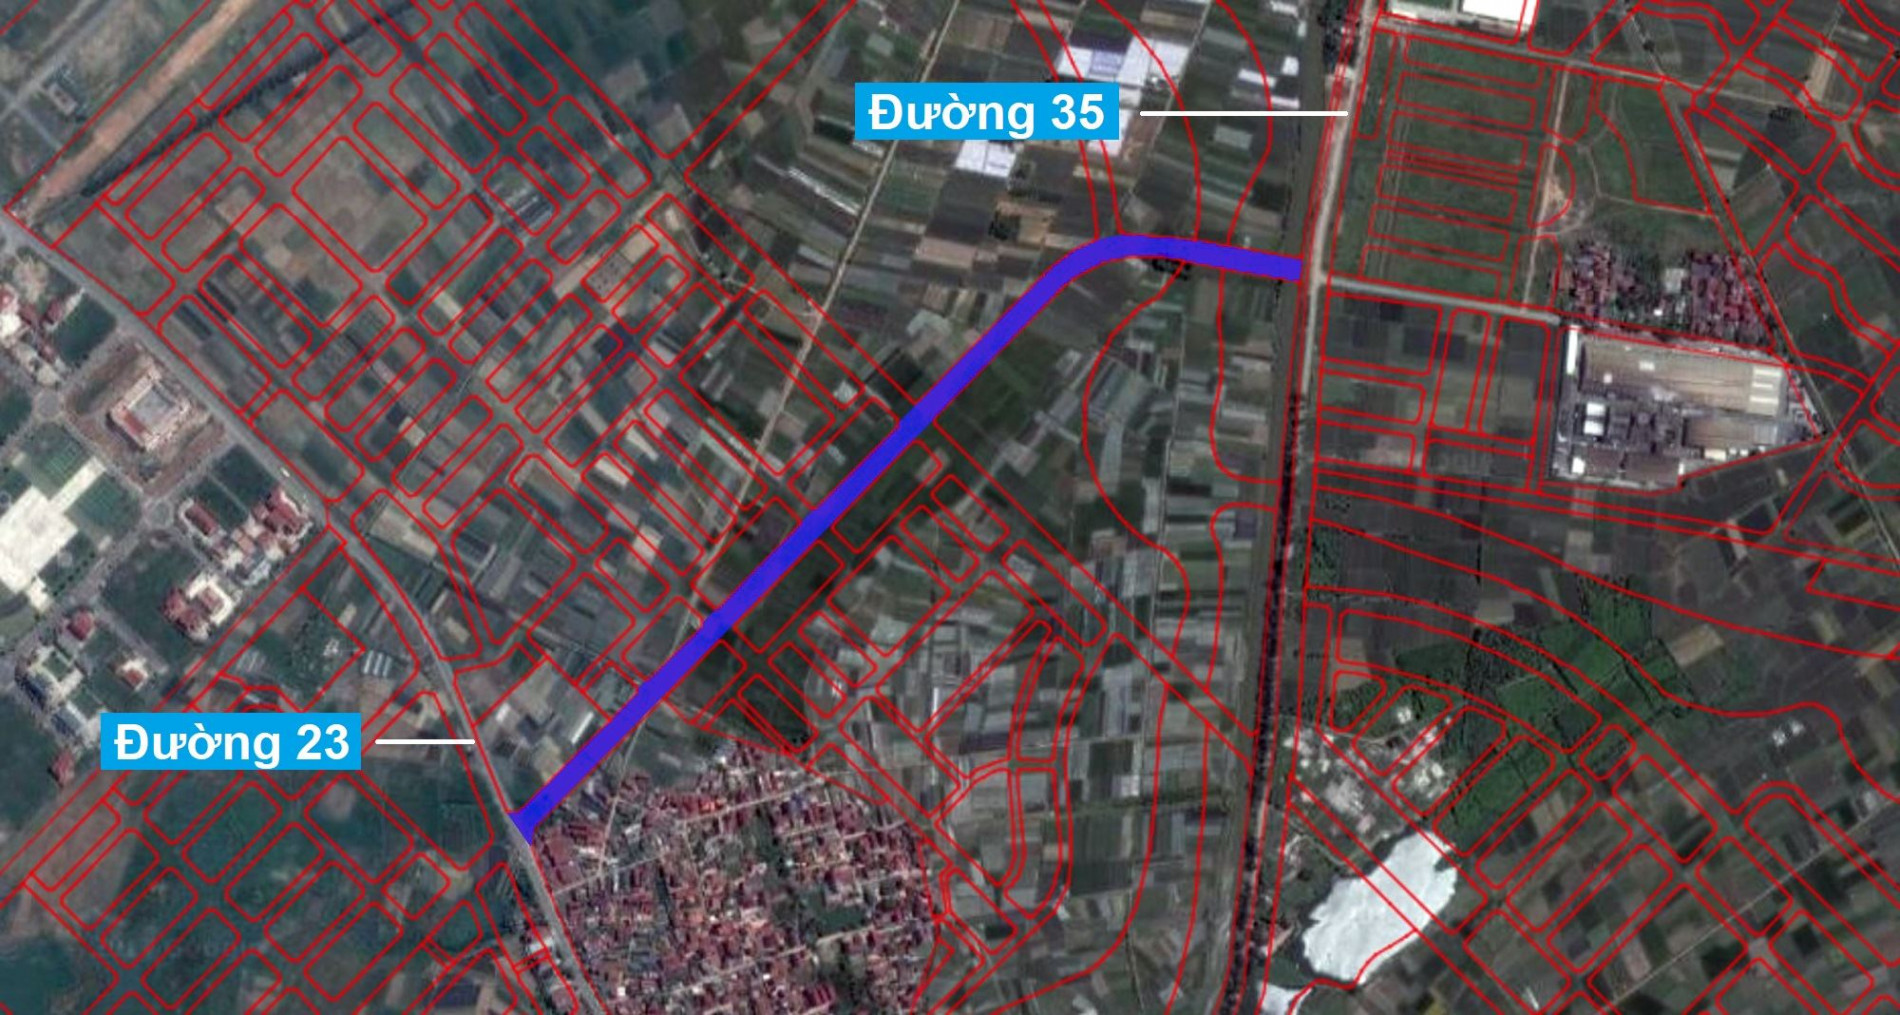 Những khu đất sắp thu hồi để mở đường ở xã Đại Thịnh, Mê Linh, Hà Nội (phần 2)